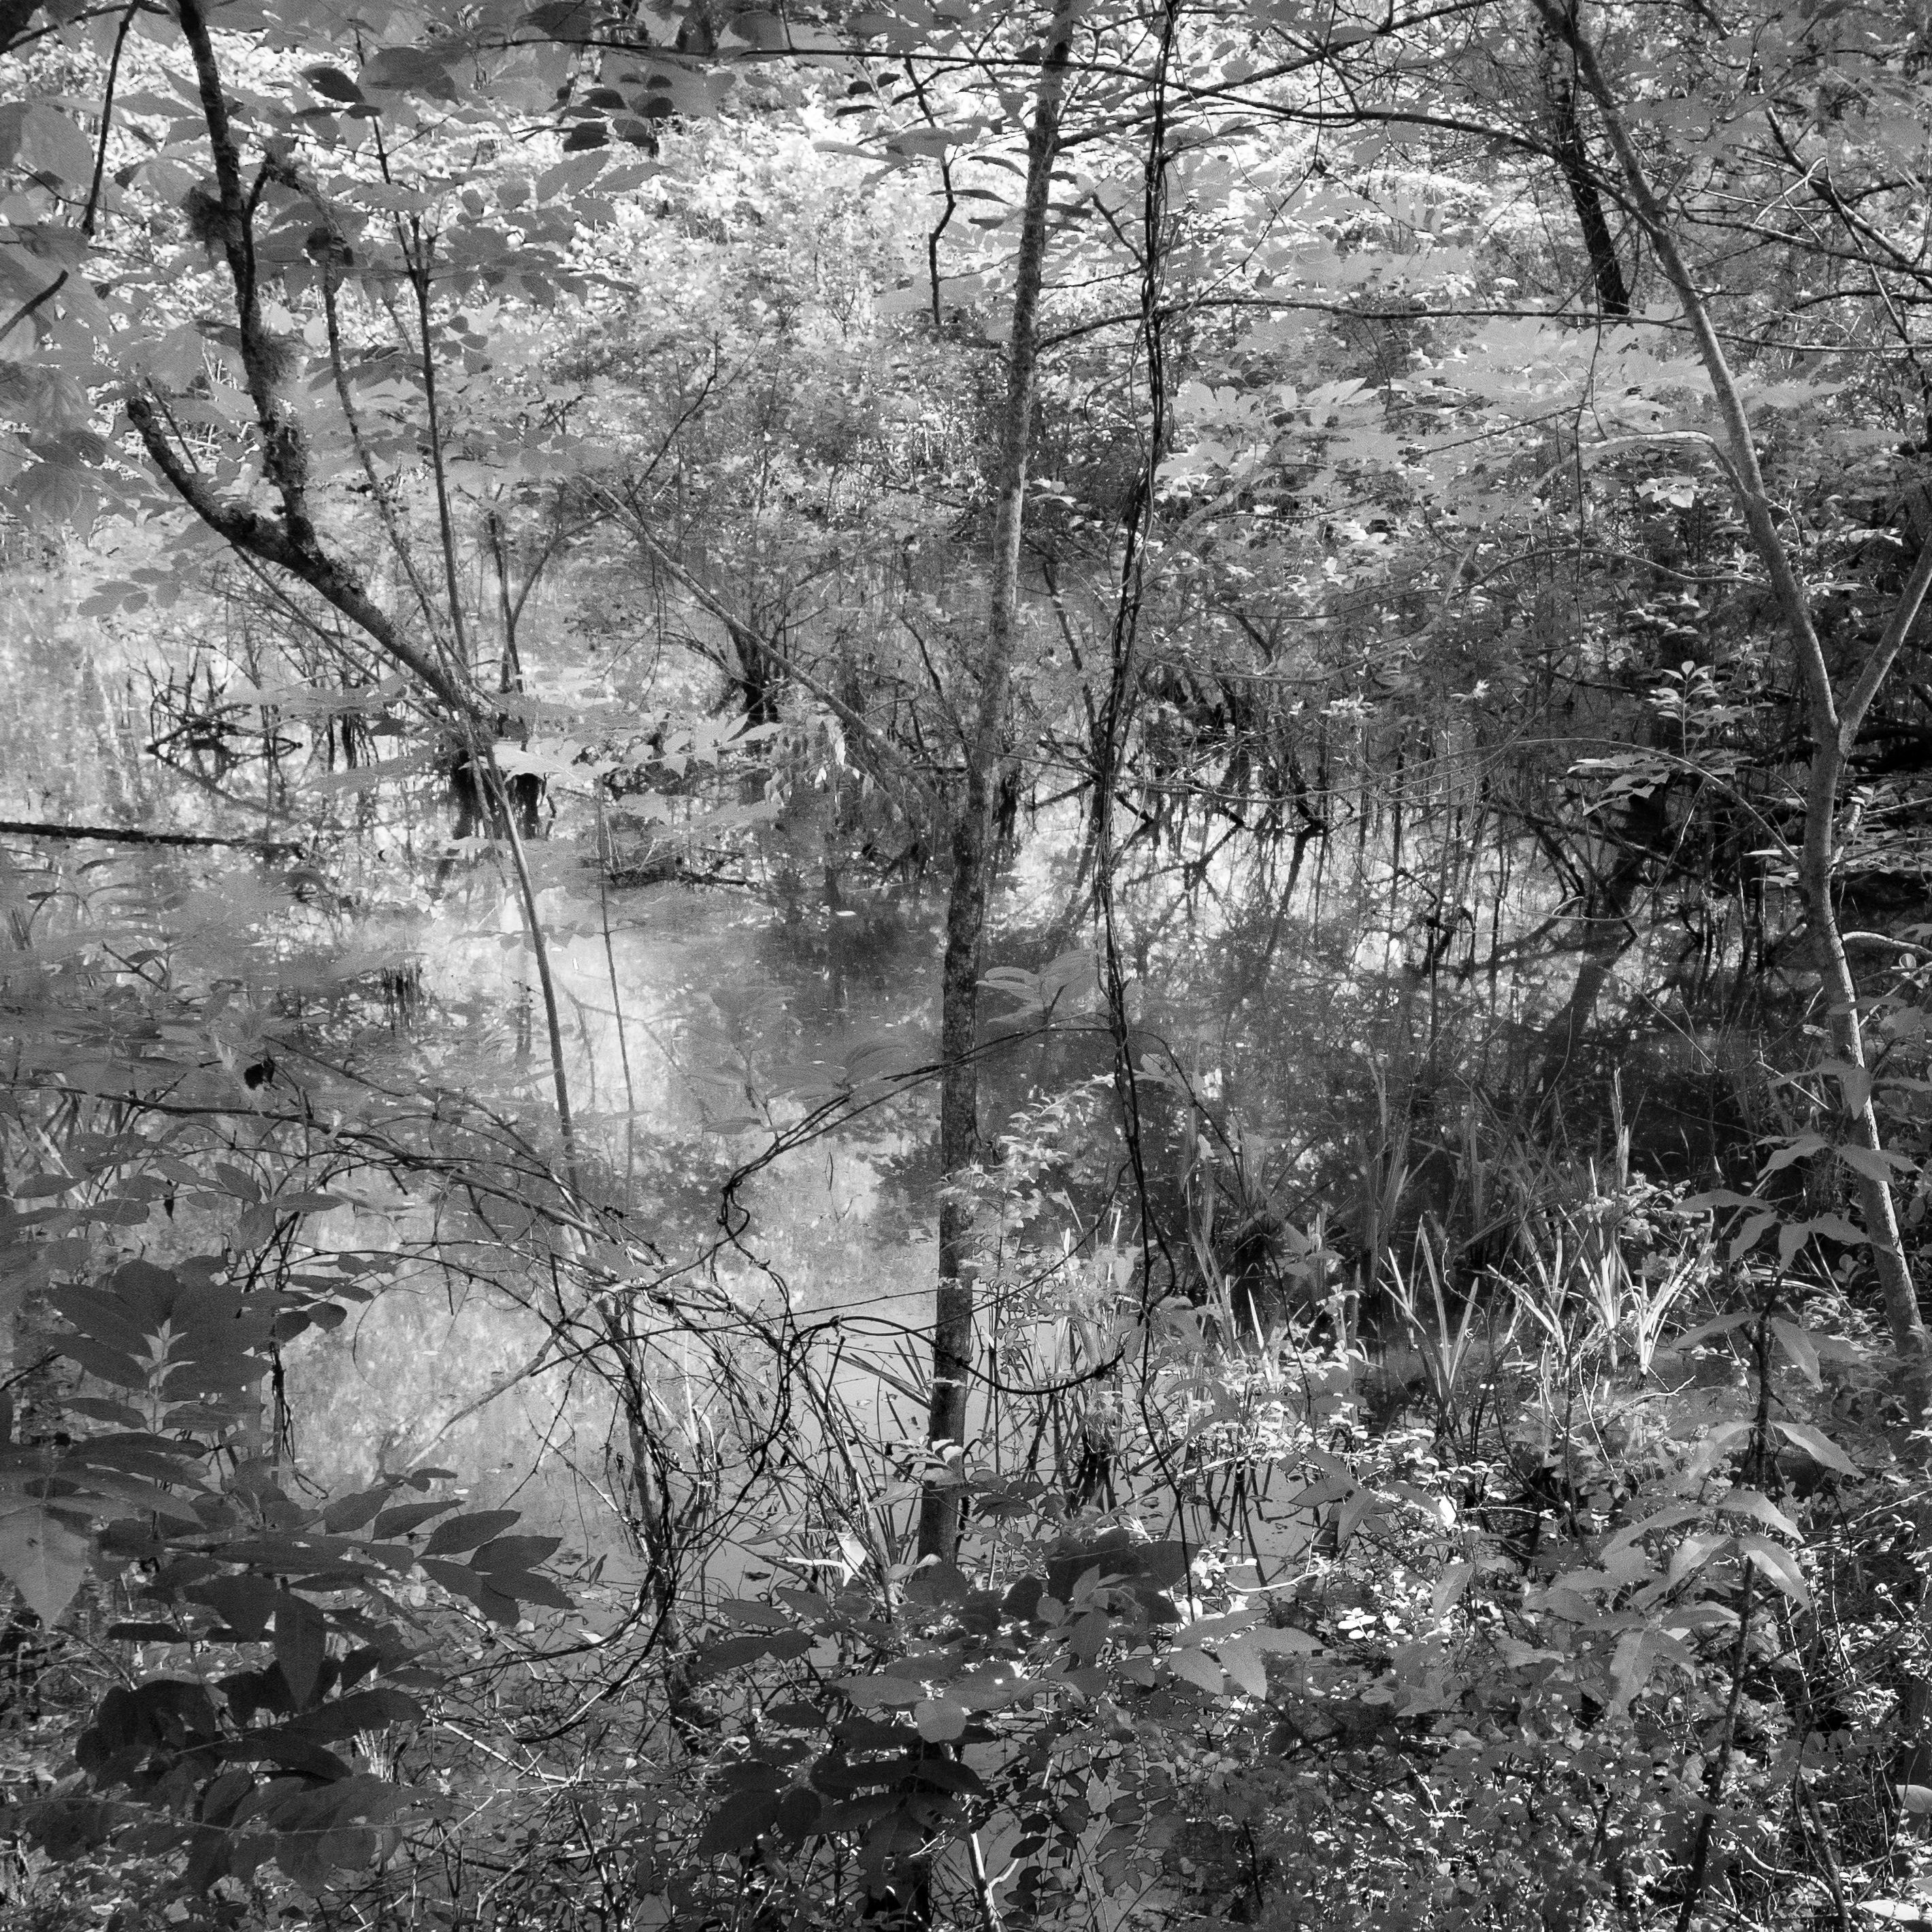 Richard Skoonberg Black and White Photograph - 'Spring Flood' - Black and White - Landscape Photography - Eliot Porter